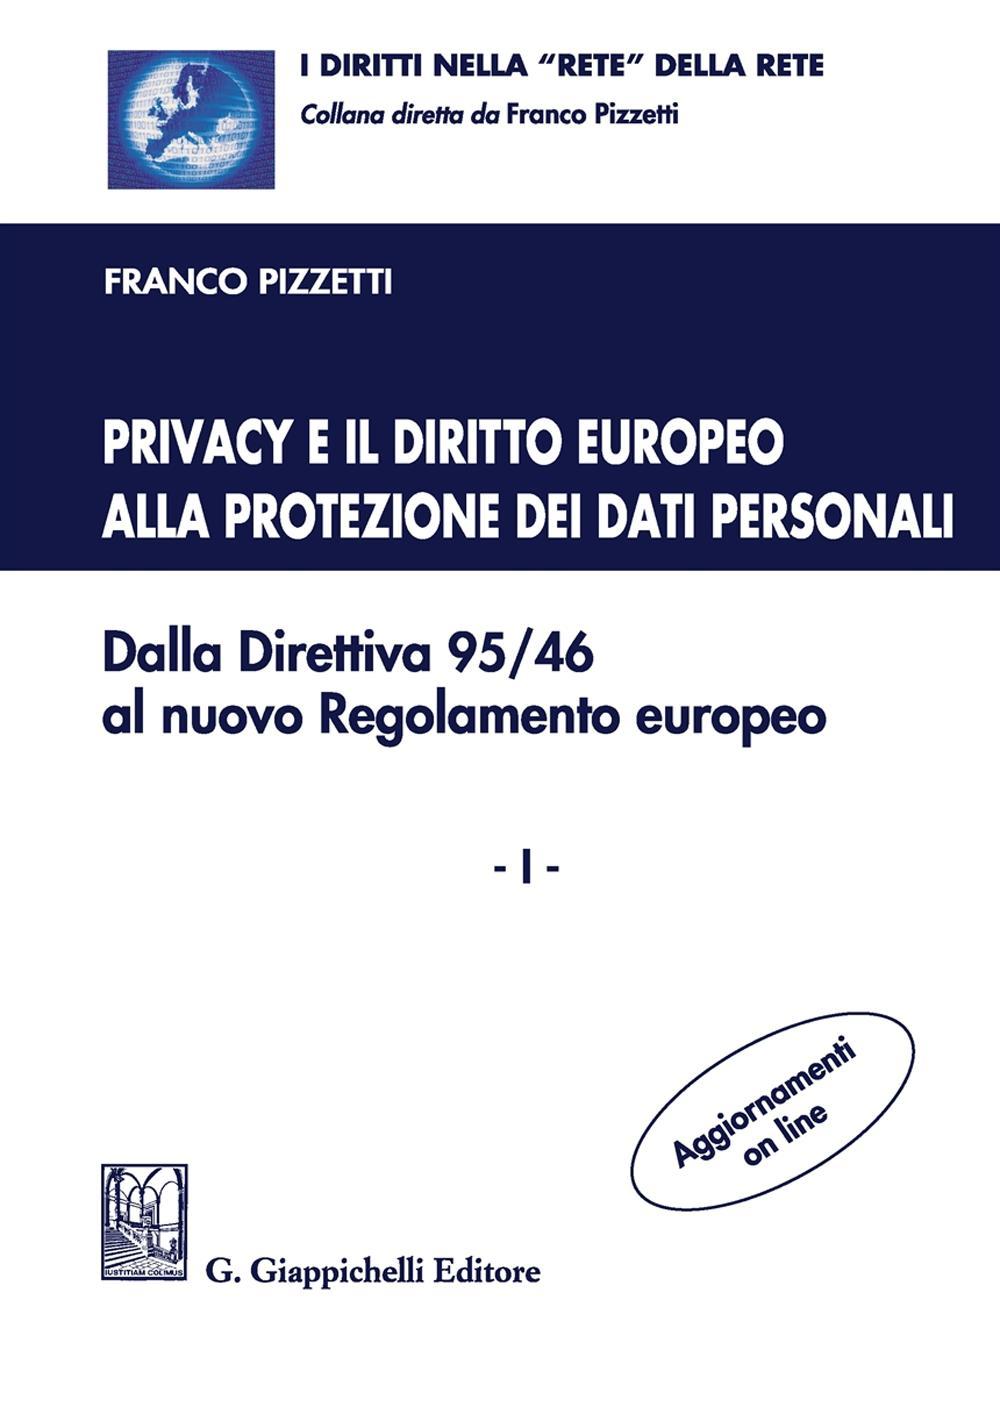 Privacy e il diritto europeo alla protezione dei dati personali. Dalla Direttiva 95/46 al nuovo Regolamento europeo. Vol. 1